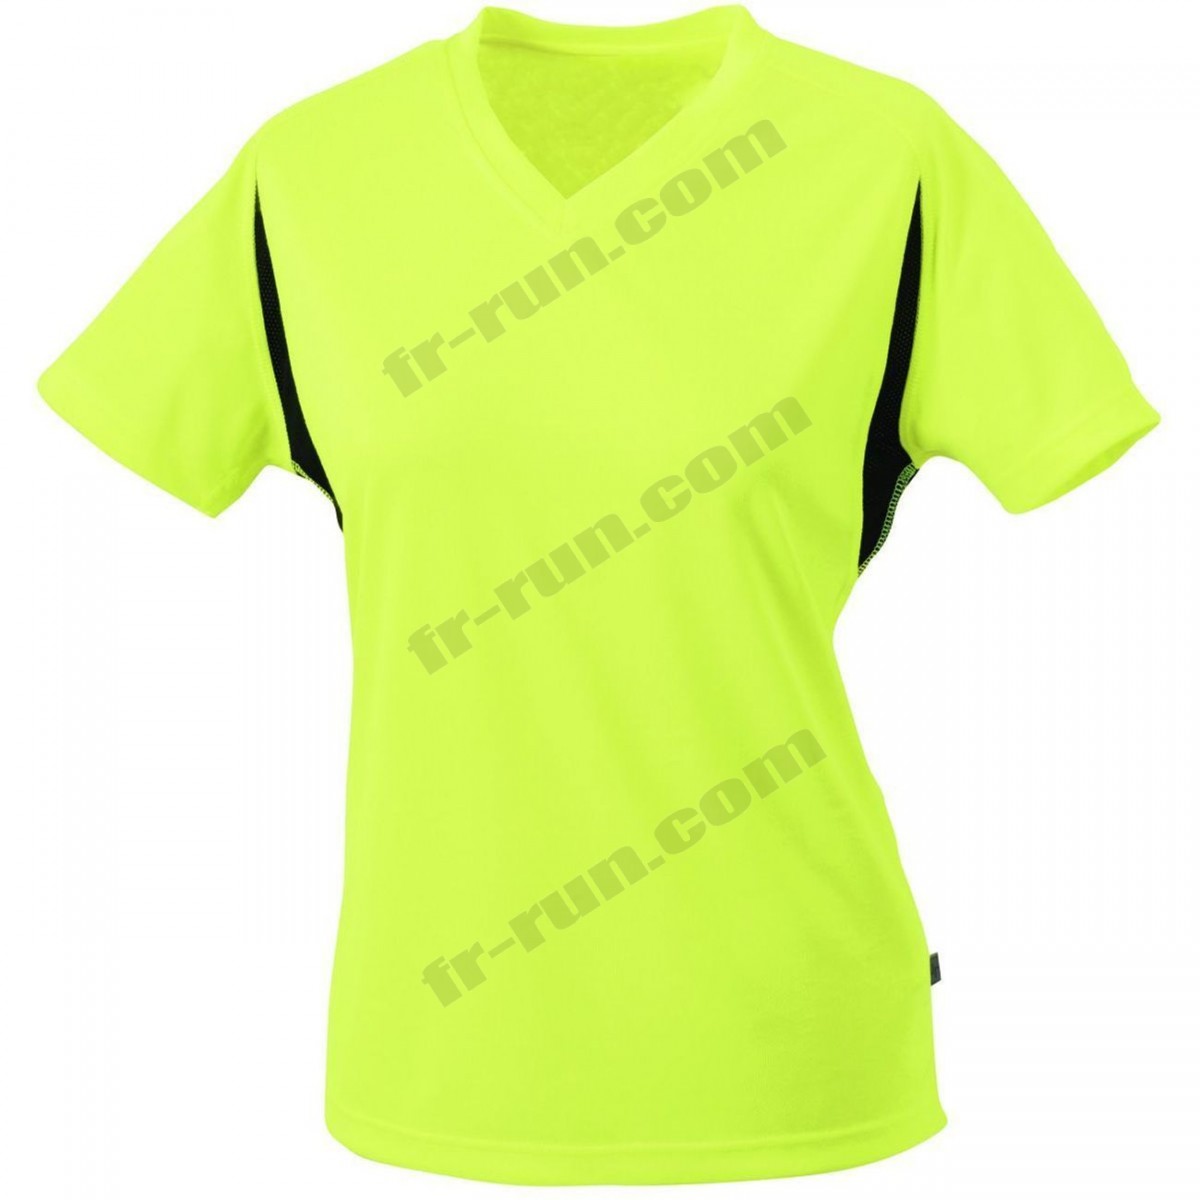 James & Nicholson/Course à pied femme JAMES & NICHOLSON t-shirt running respirant JN316 - jaune fluo - FEMME √ Nouveau style √ Soldes - -1